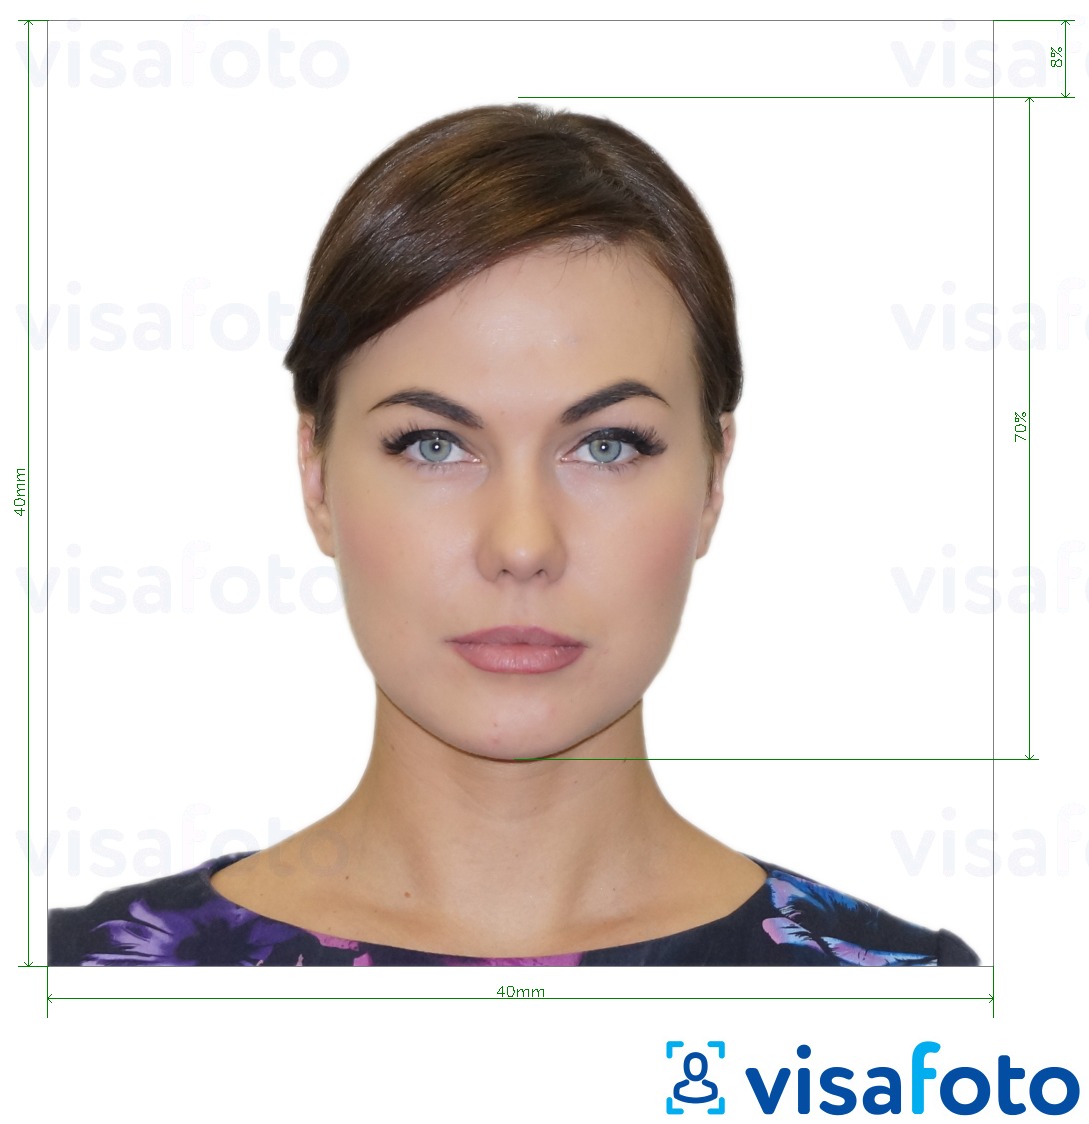 Приклад фотографії для Паспорт Аргентини 4х4 см (40x40 мм) з точними специфікаціями розміру